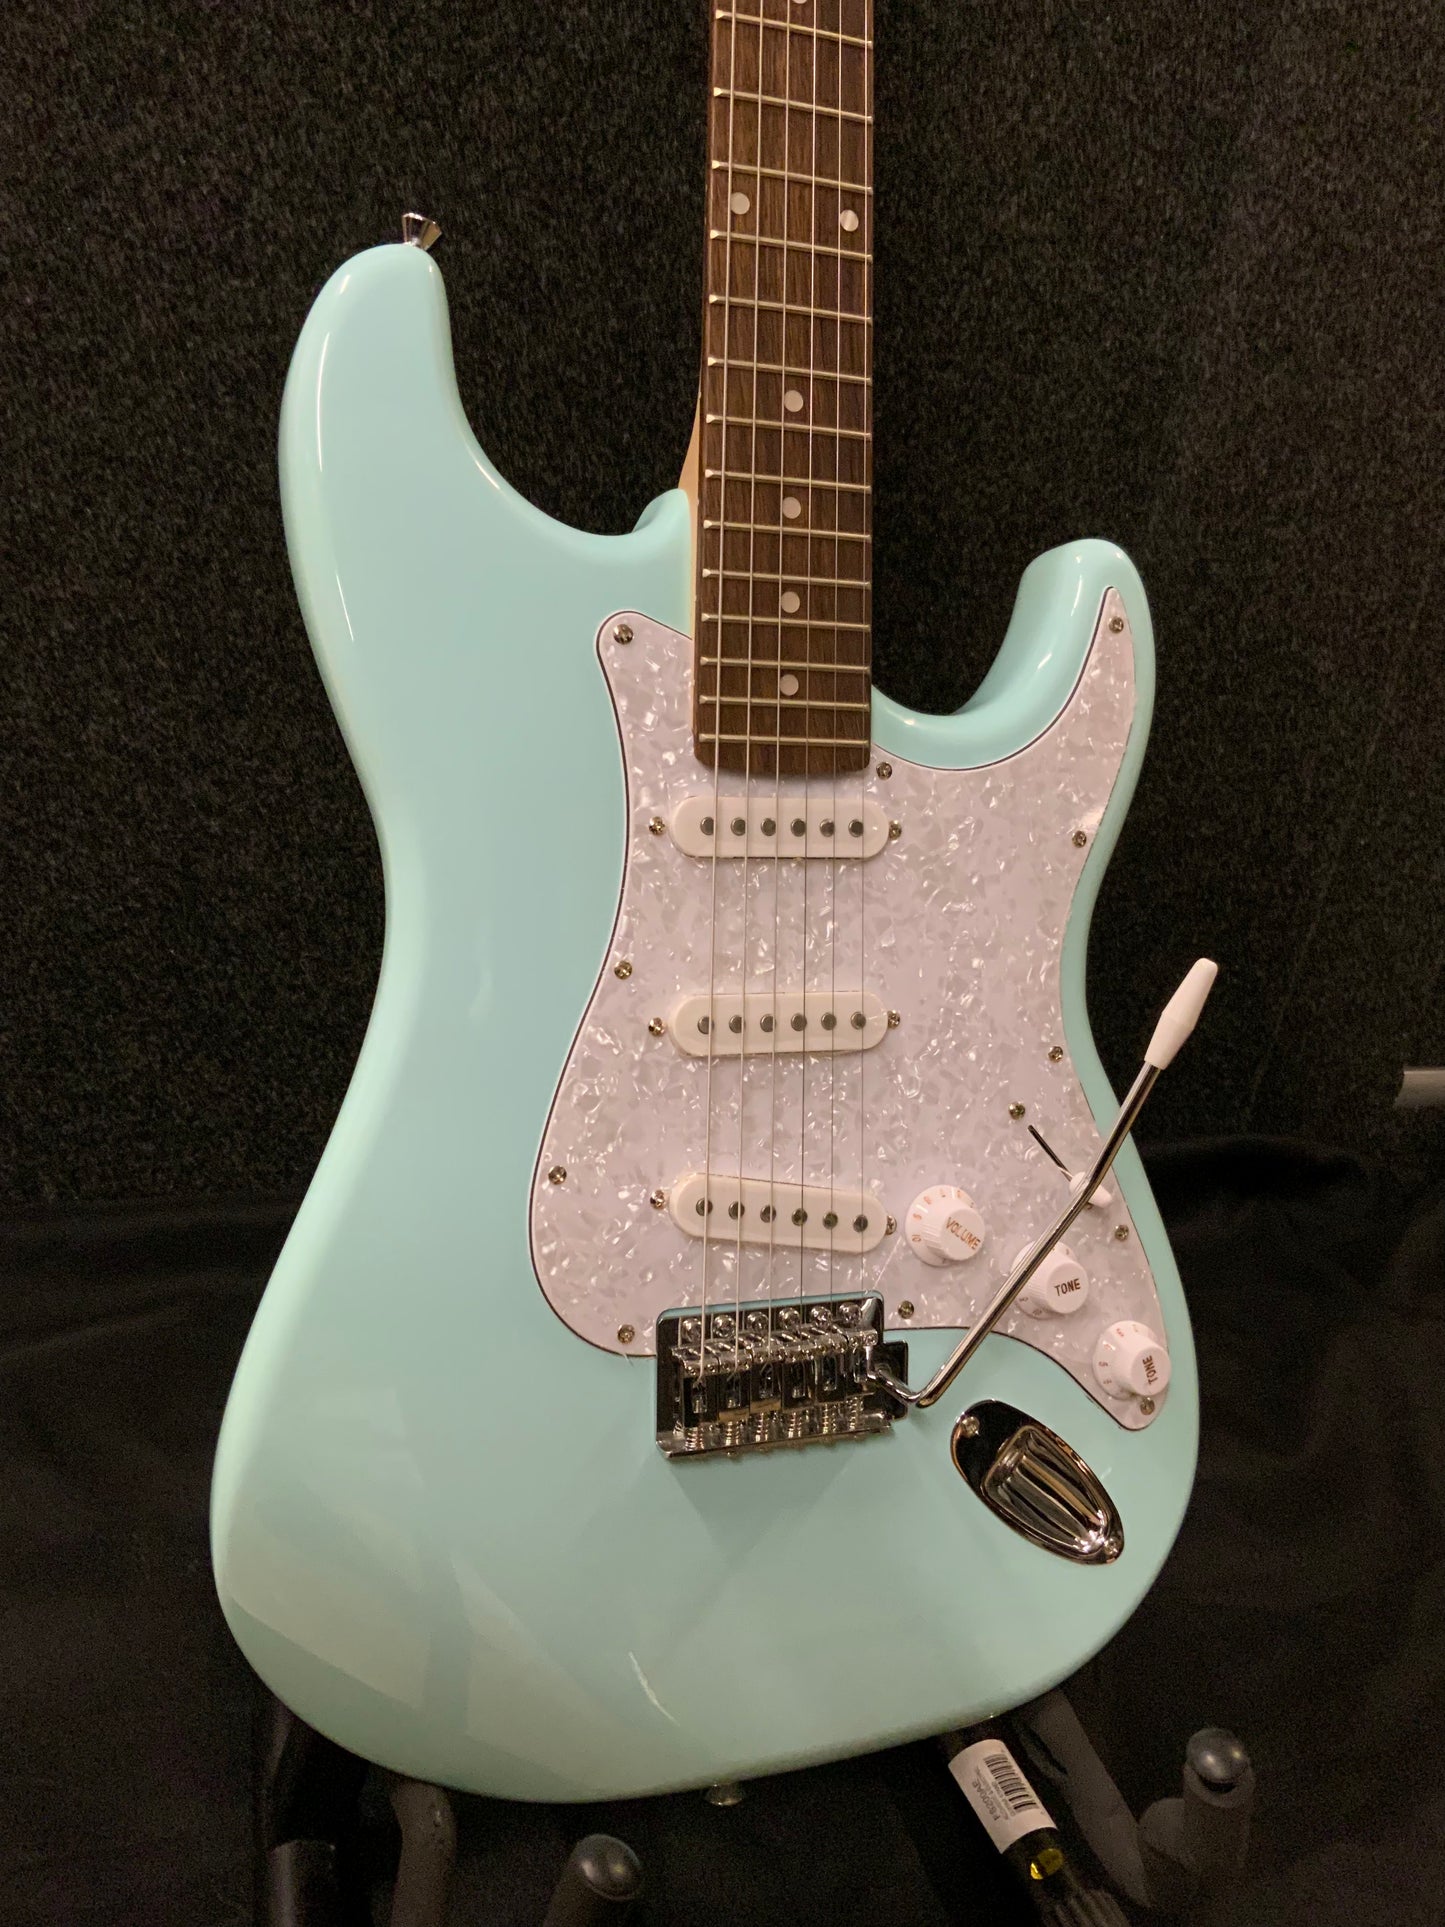 Nashville Guitar Works Strat Style Electric Guitar - Light Blue